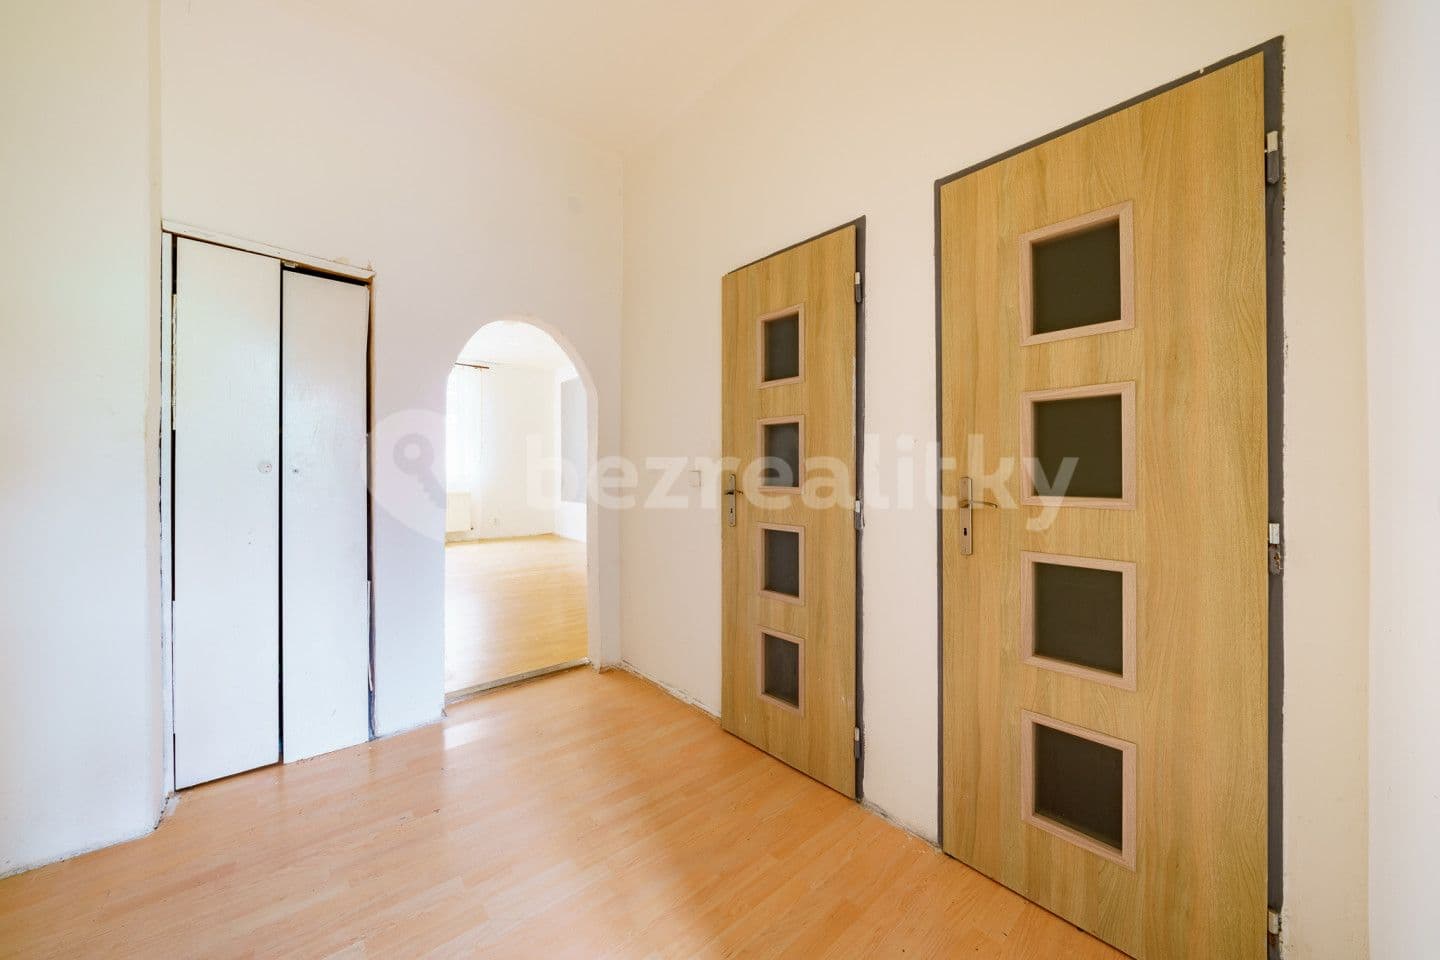 2 bedroom flat for sale, 49 m², Kamenná, Aš, Karlovarský Region